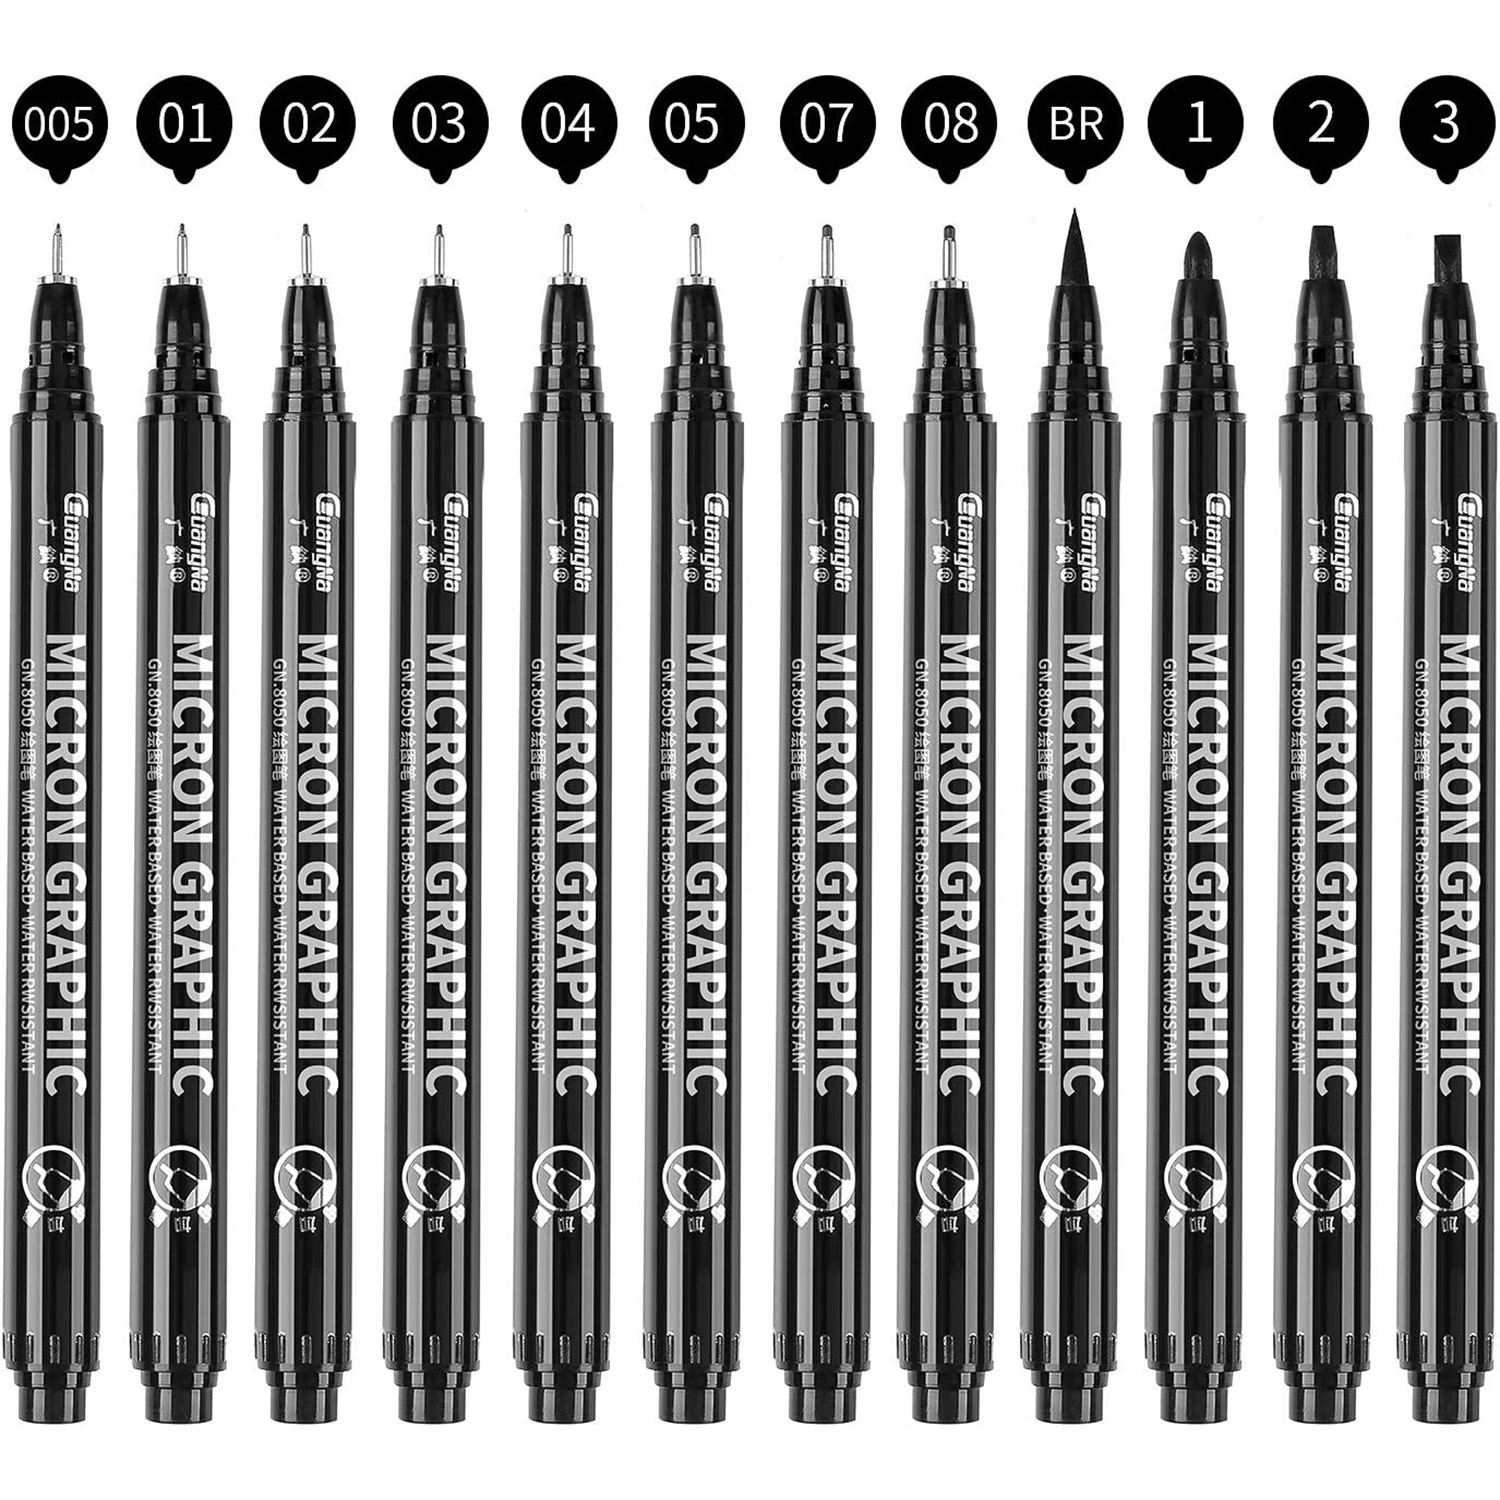 https://ae01.alicdn.com/kf/Se1311d3ab515459ab75d34e3f10da360h/Black-Micro-Pen-Fineliner-Ink-Pens-Waterproof-Archival-Ink-Fine-Point-Micro-Drawing-Pen-for-Art.jpg